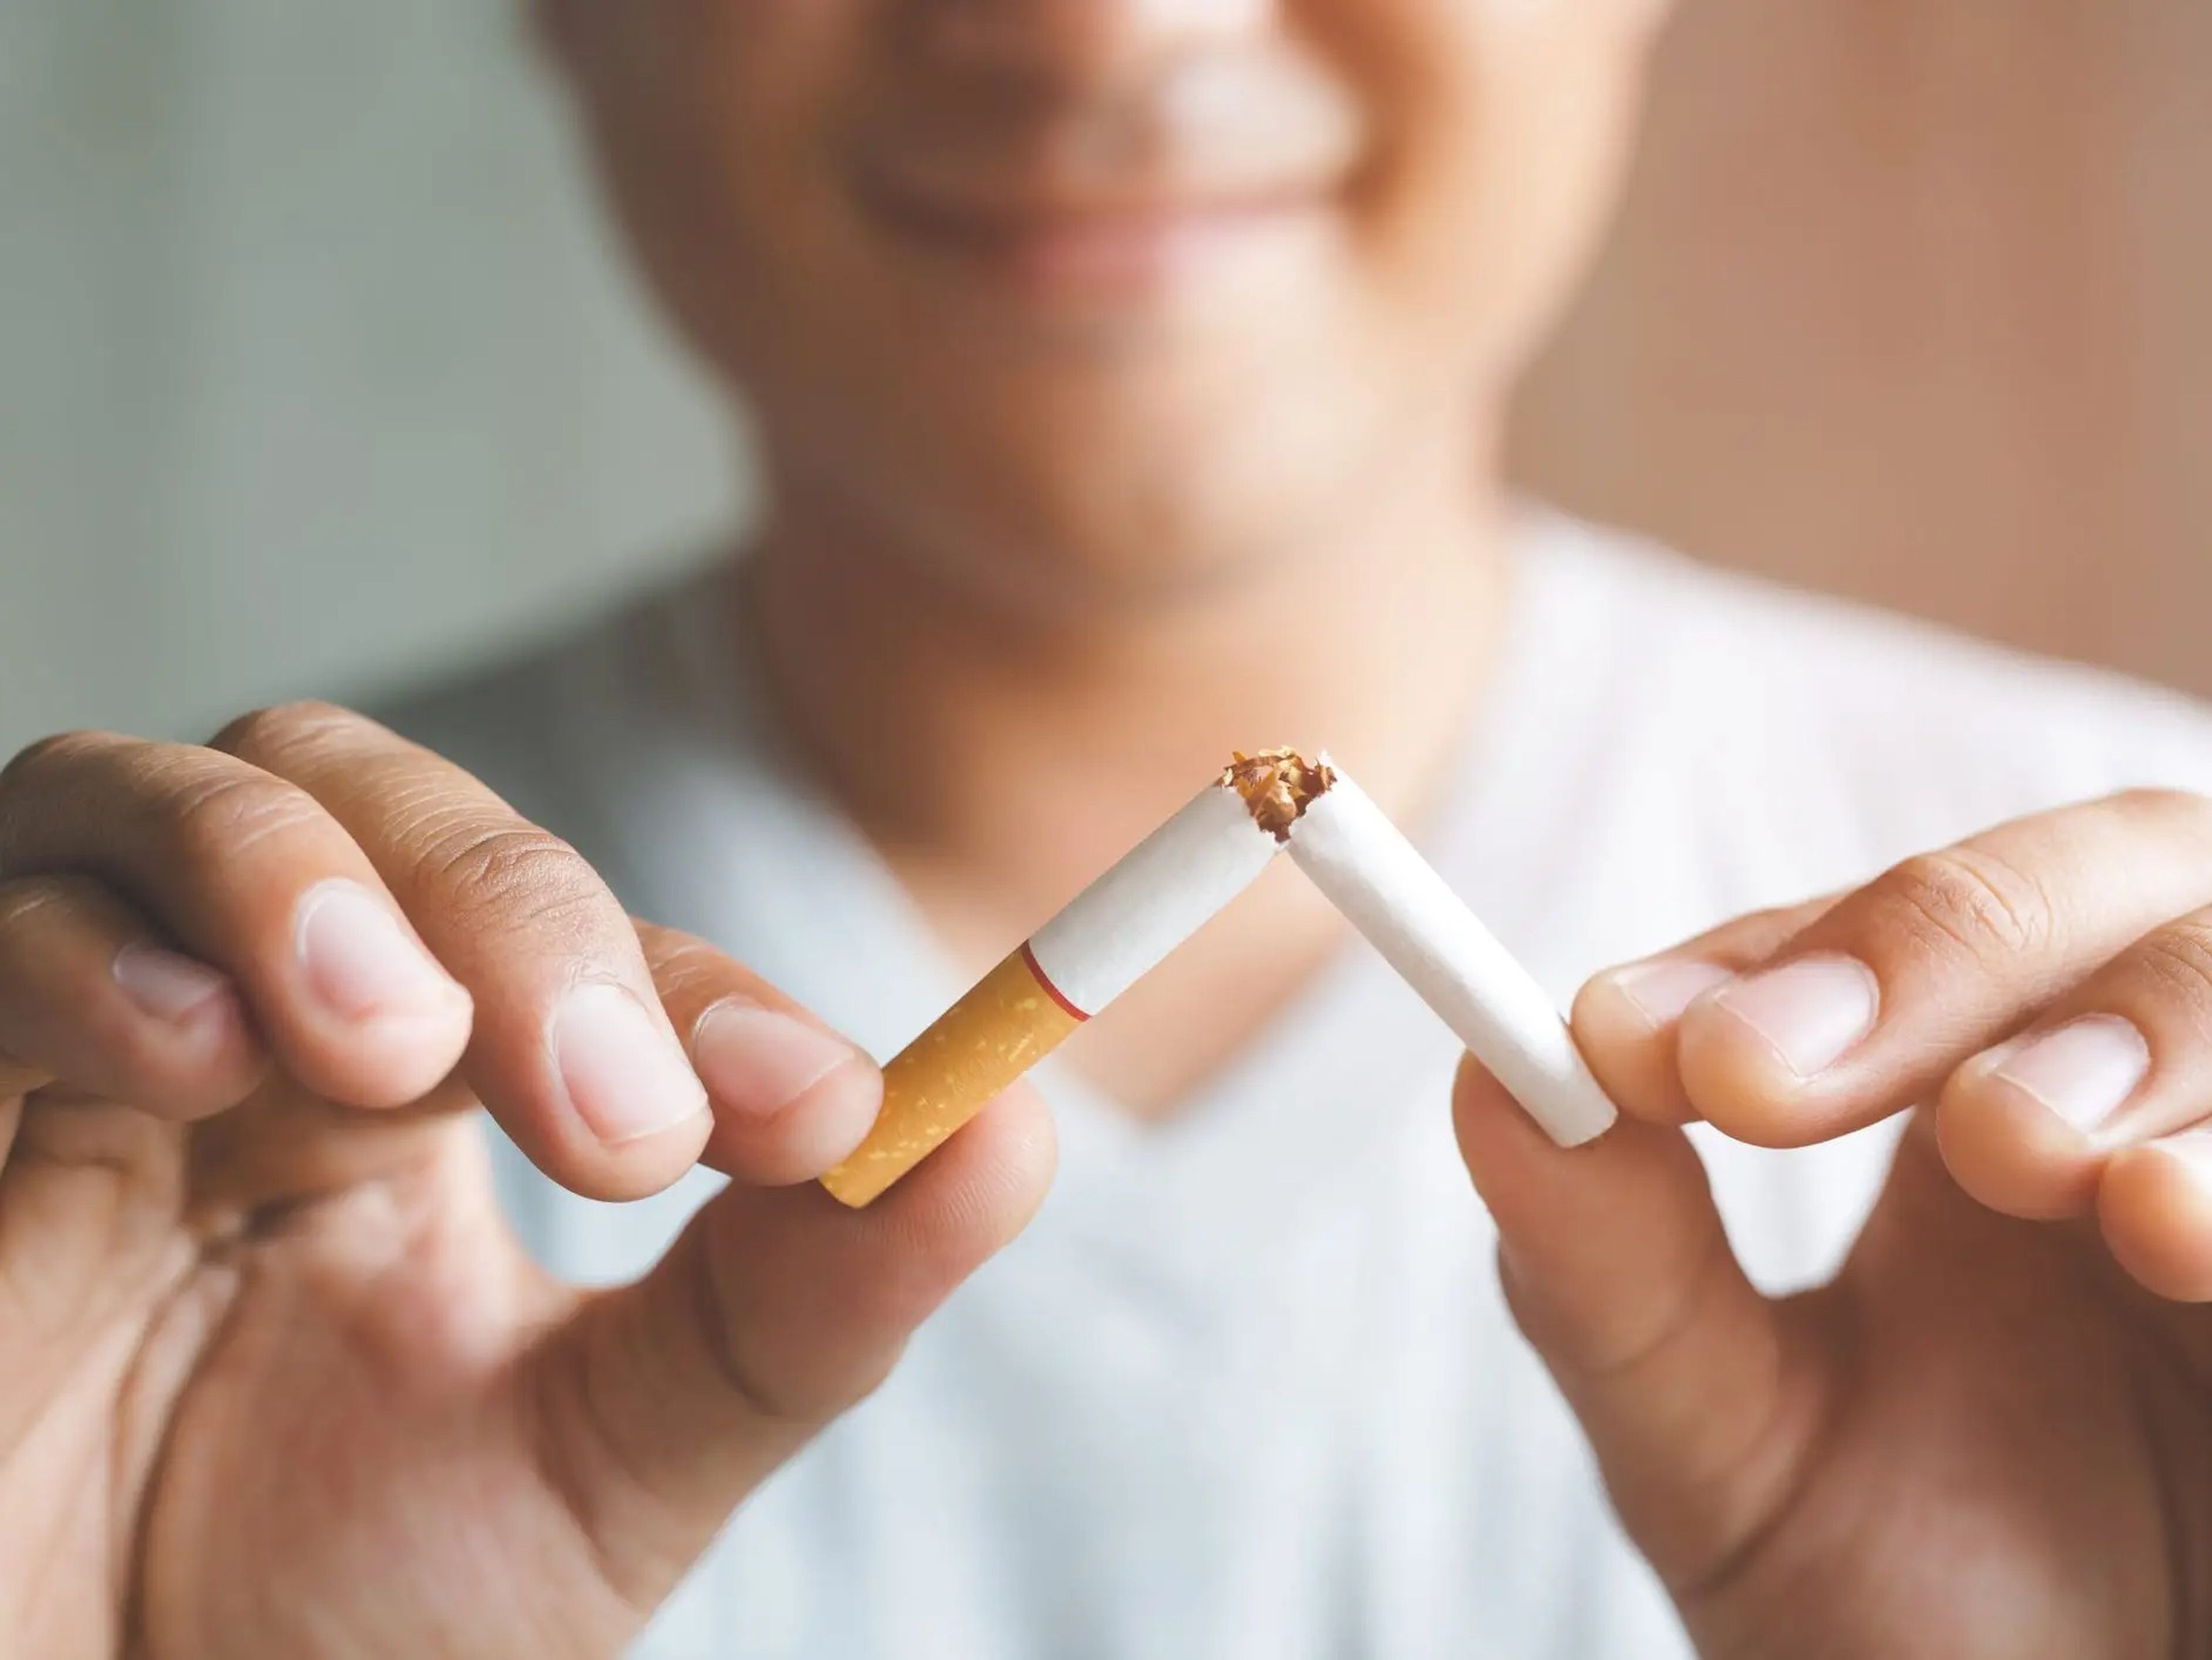 Dejar de fumar puede ayudar a prevenir enfermedades cardiovasculares y mejorar otras medidas de salud.